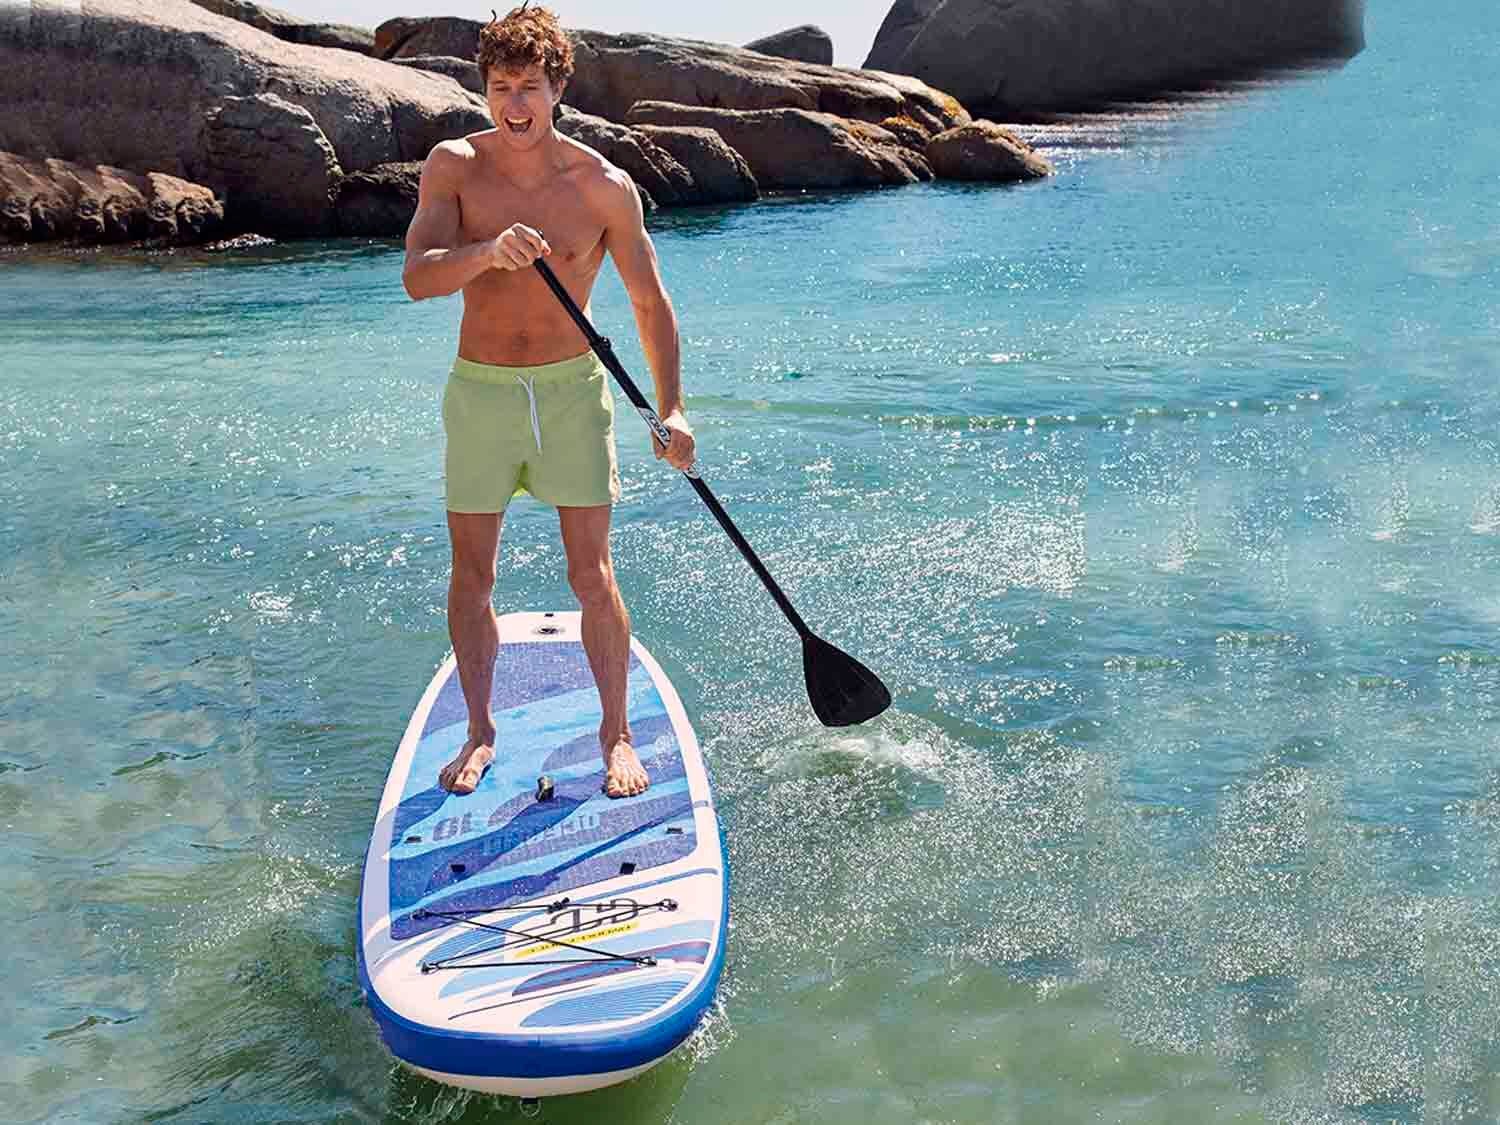 consultor Clínica Escarpado La tabla de paddle surf más barata sin renunciar a la calidad está en Lidl